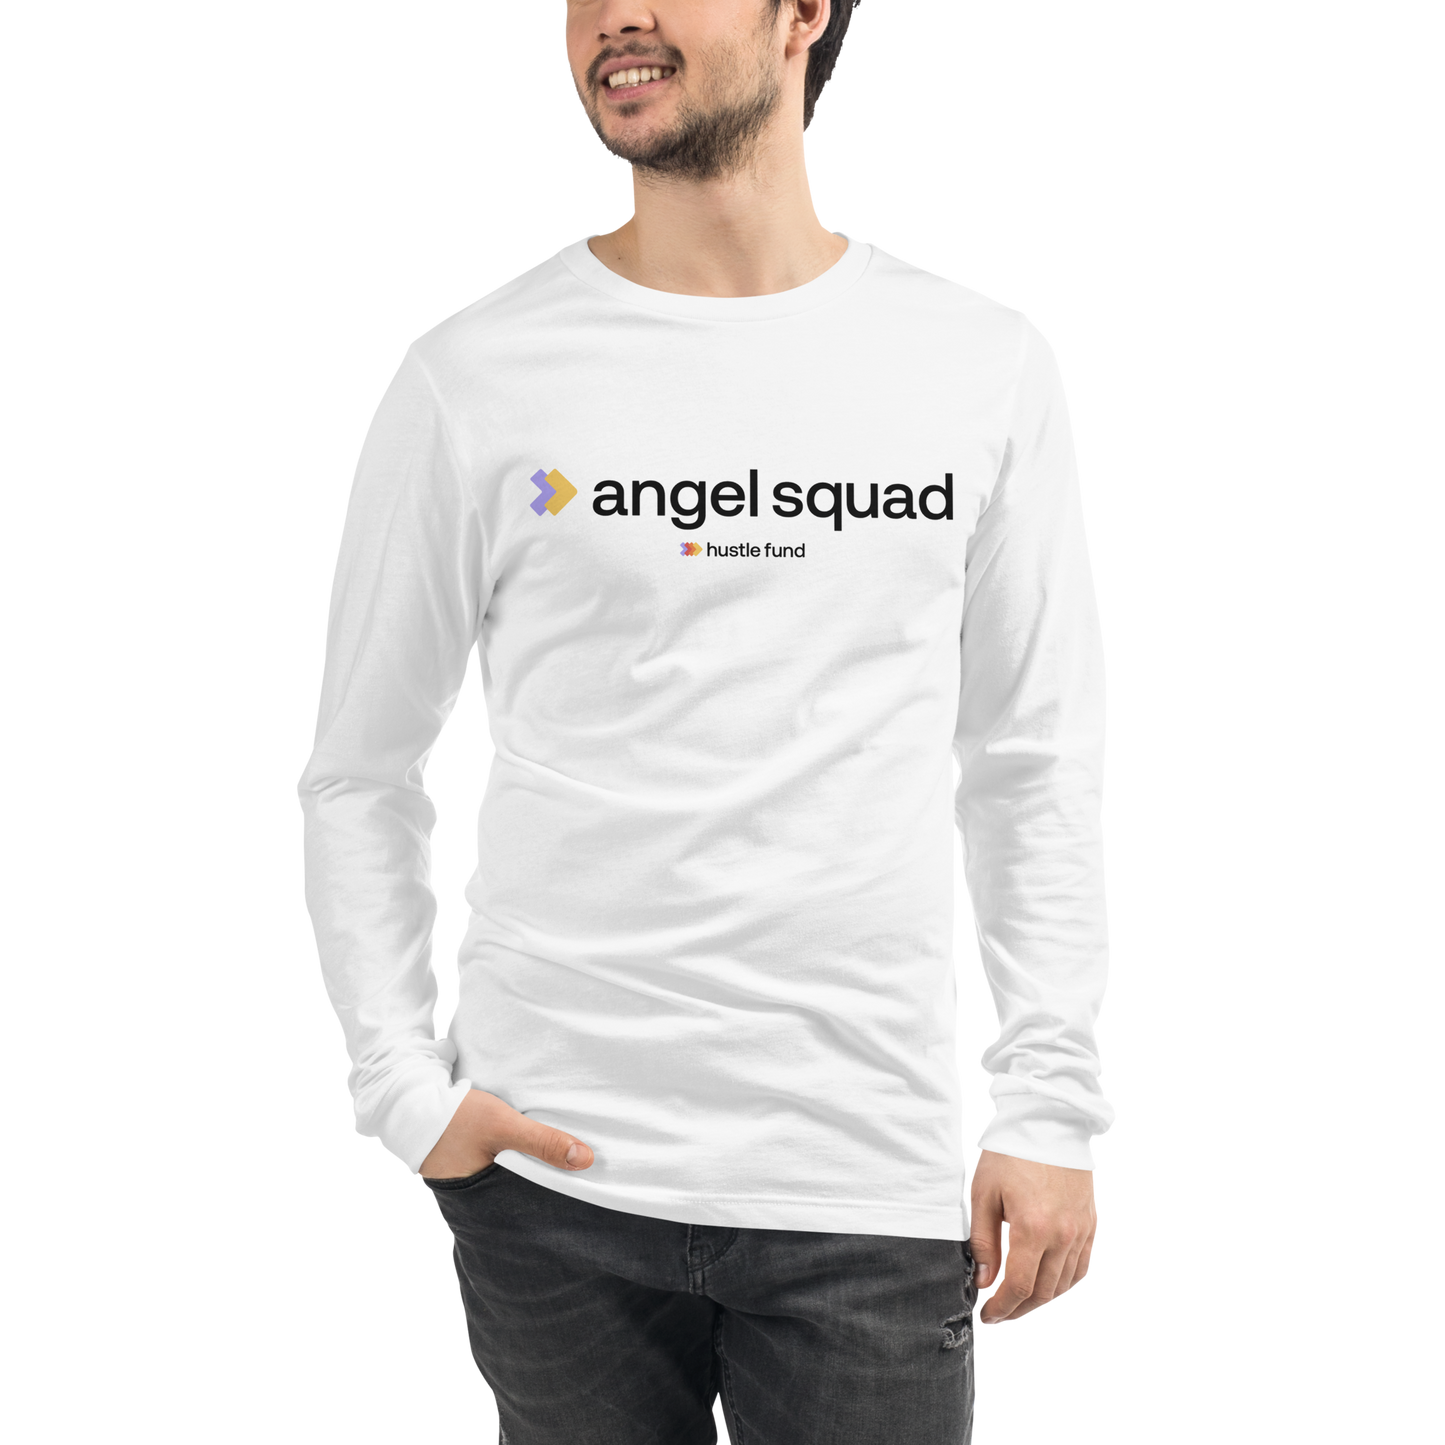 Hustle Fund Angel Squad Unisex Long Sleeve Shirt